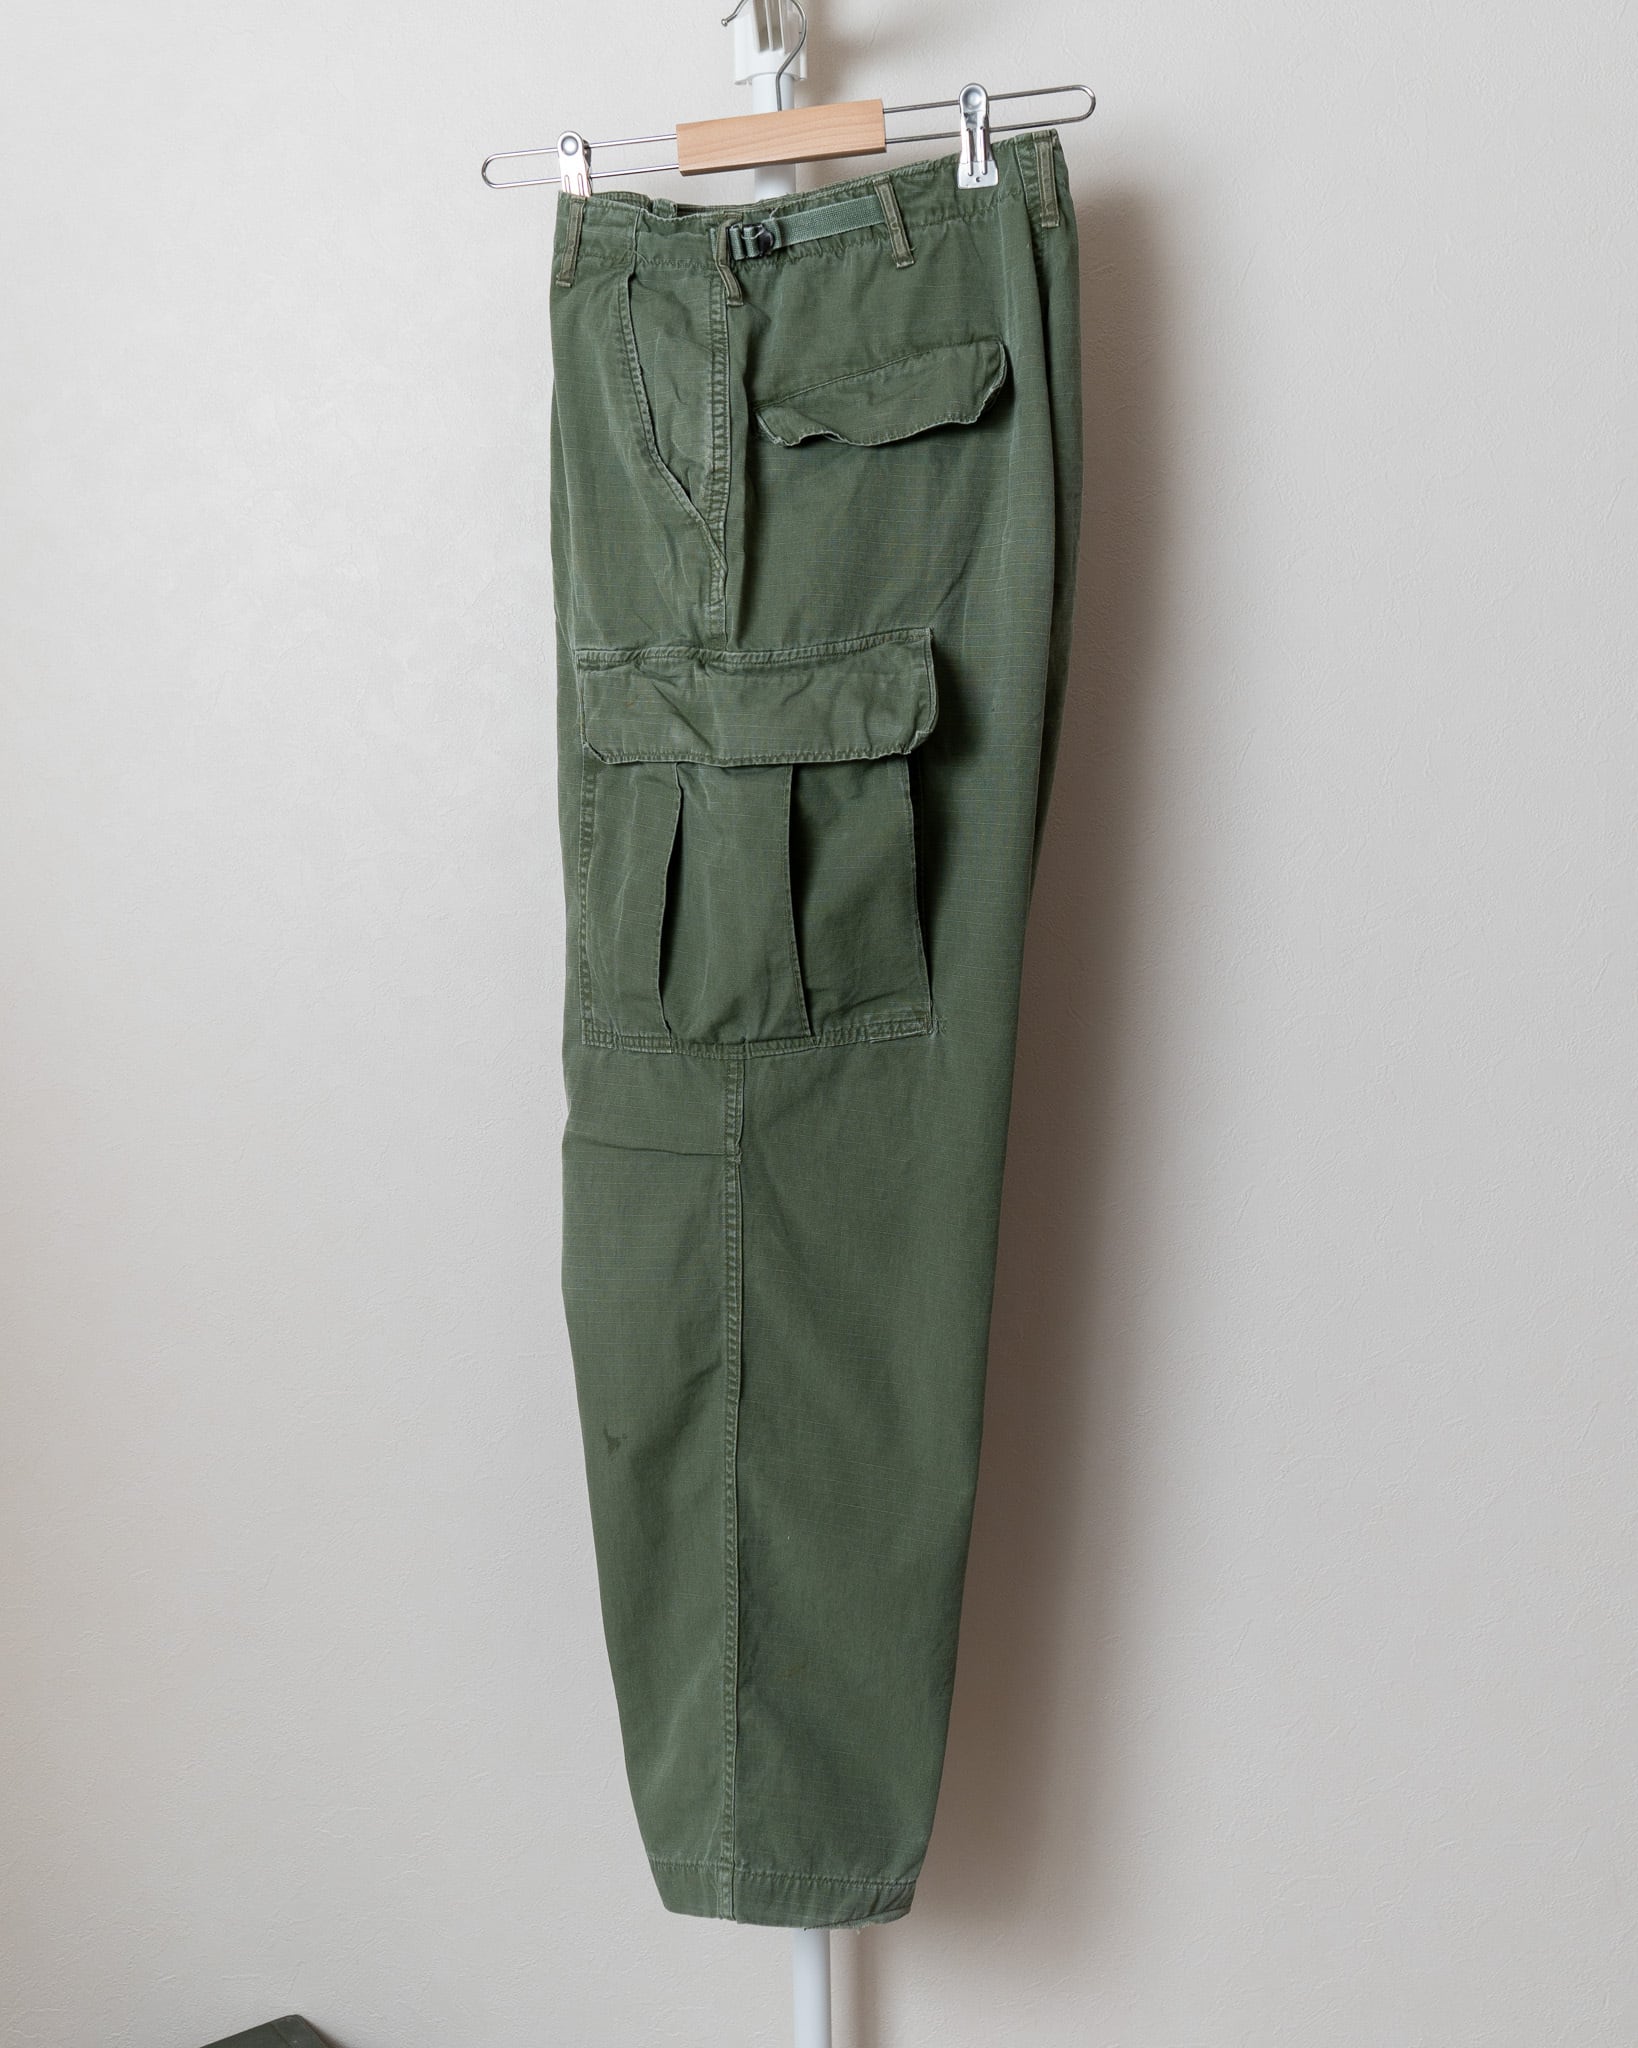 S-R】U.S.Army 60's Jungle Fatigue Pants 4th OG-107 